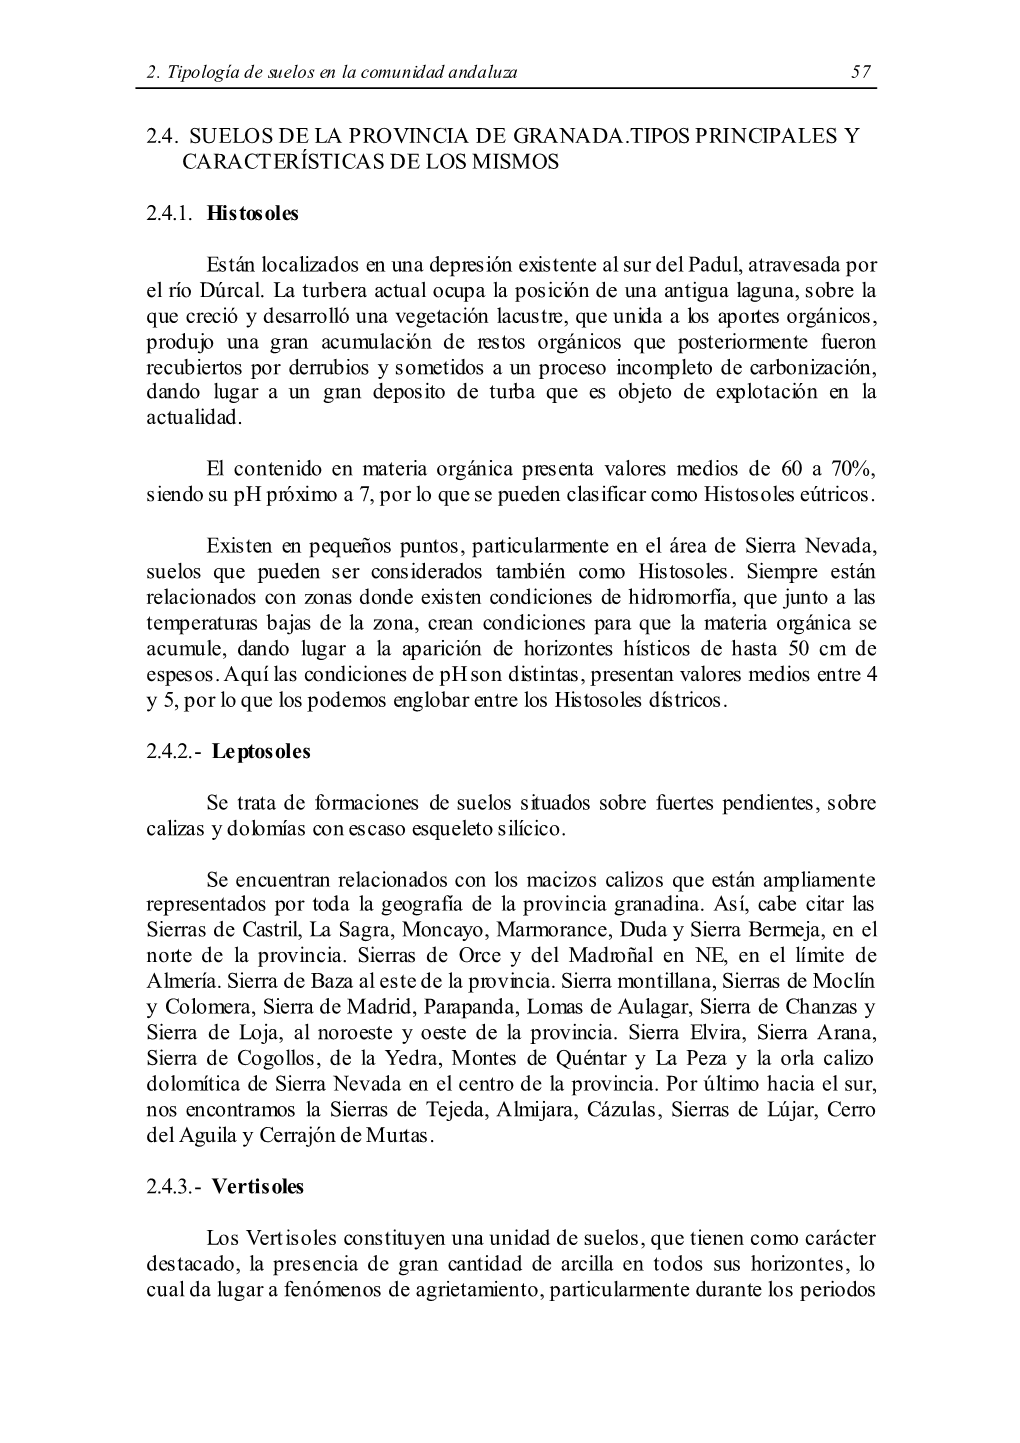 2.4. Suelos De La Provincia De Granada.Tipos Principales Y Caract Erísticas De Los Mismos